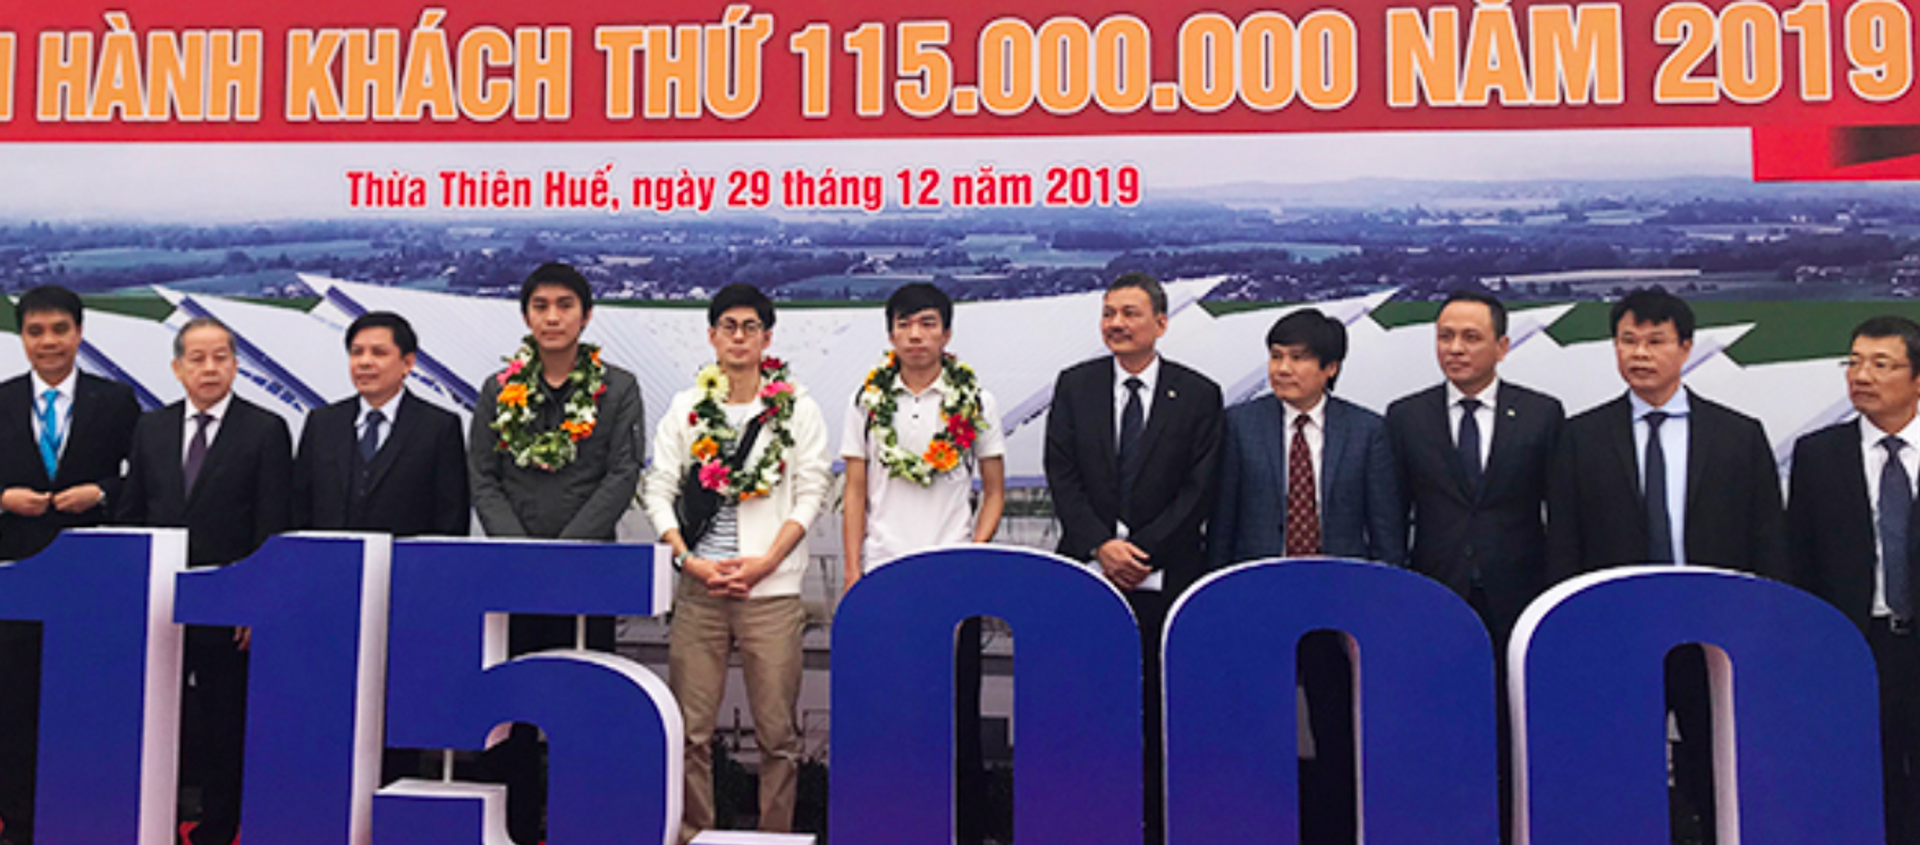 Hành khách thứ 115 triệu và hai hành khách gần số 115 triệu được lãnh đạo ngành hàng không đón tiếp tại sân bay Phú Bài.  - Sputnik Việt Nam, 1920, 29.12.2019